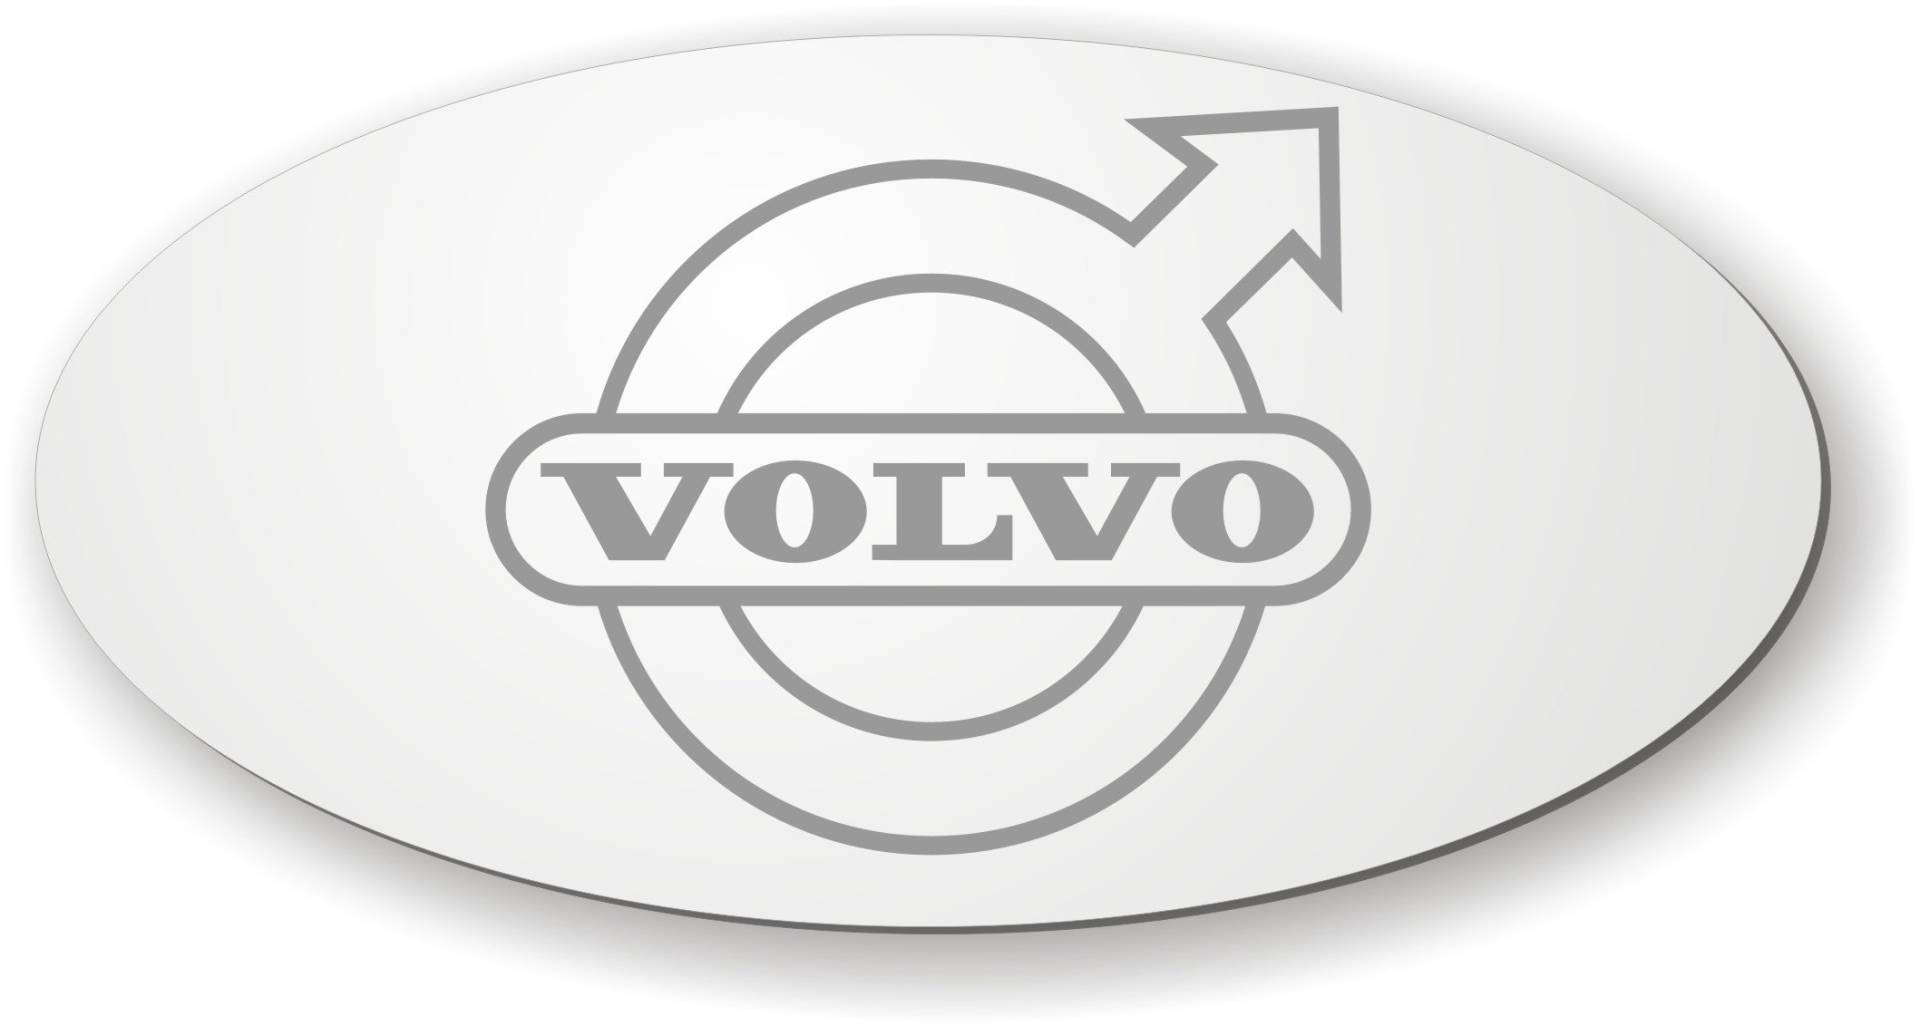 Spiegel kompatibel mit Volvo für die Rückwand ✓ Aufkleber ✓ Sticker✓ LKW-Zubehör und Artikel für Innenausstattung ✓ Rückwandspiegel ✓ Truck accessoires für den Innenraum ✓ von Schilderfeuerwehr